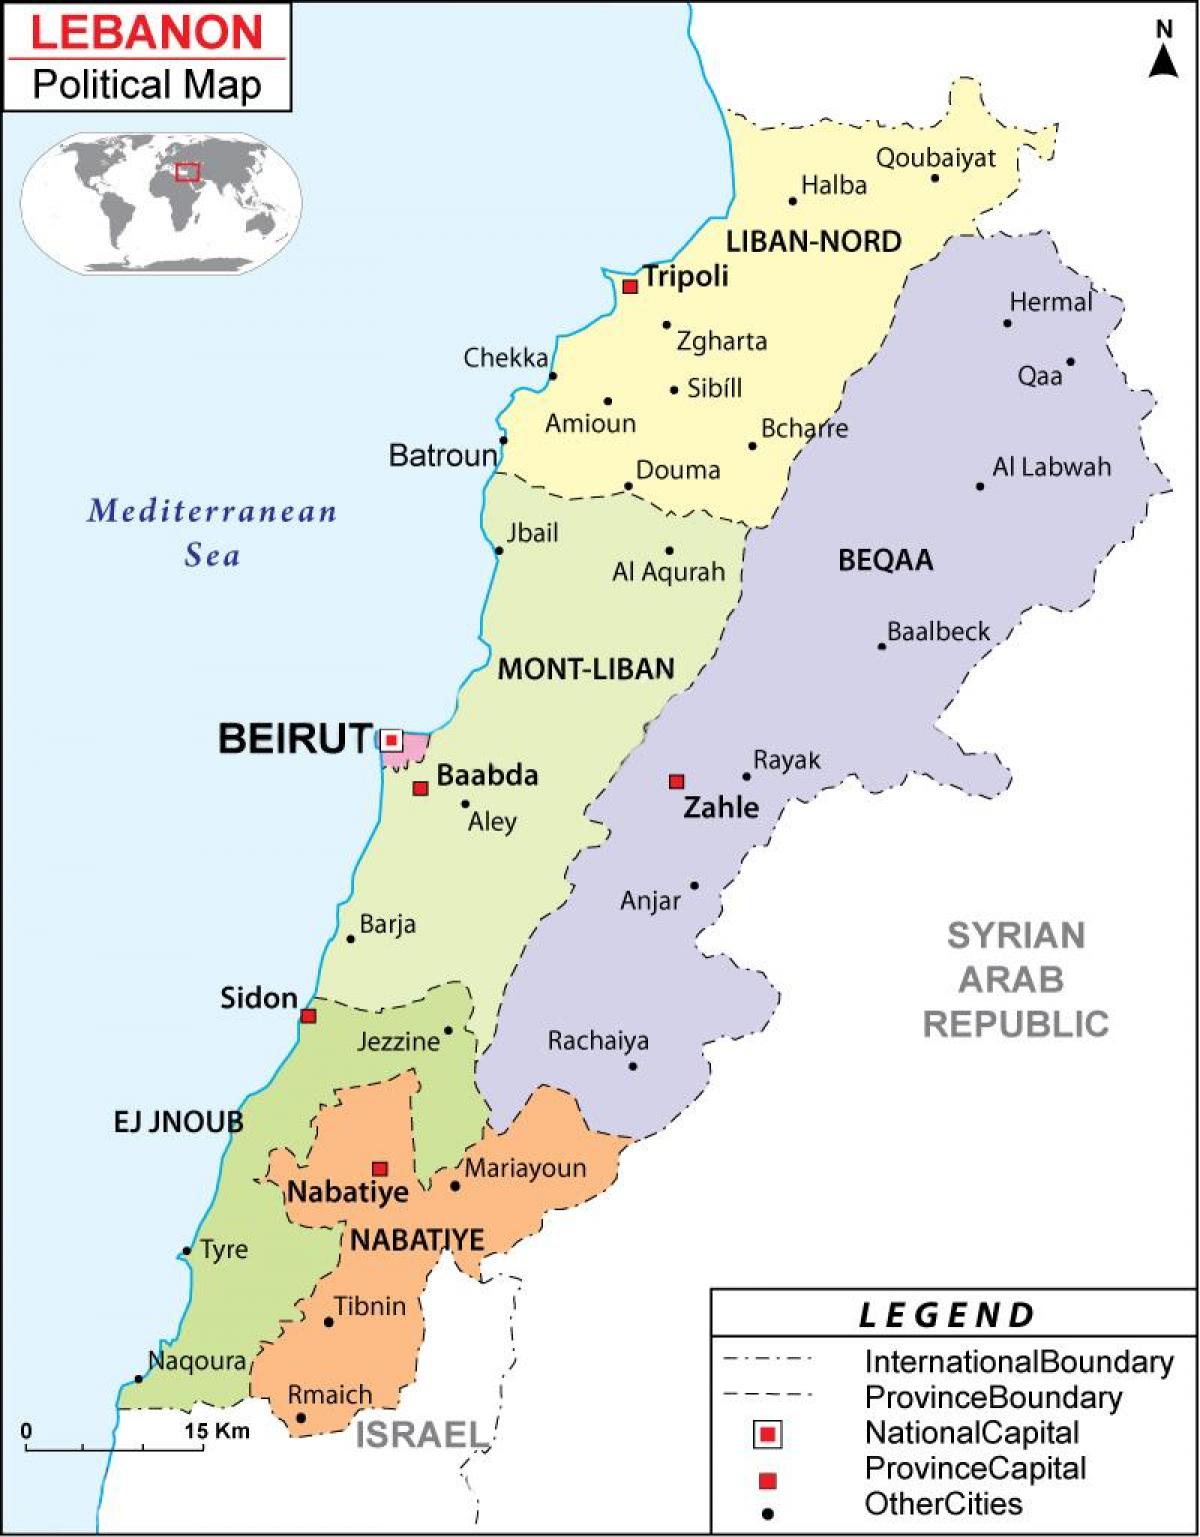 המפה הפוליטית של לבנון